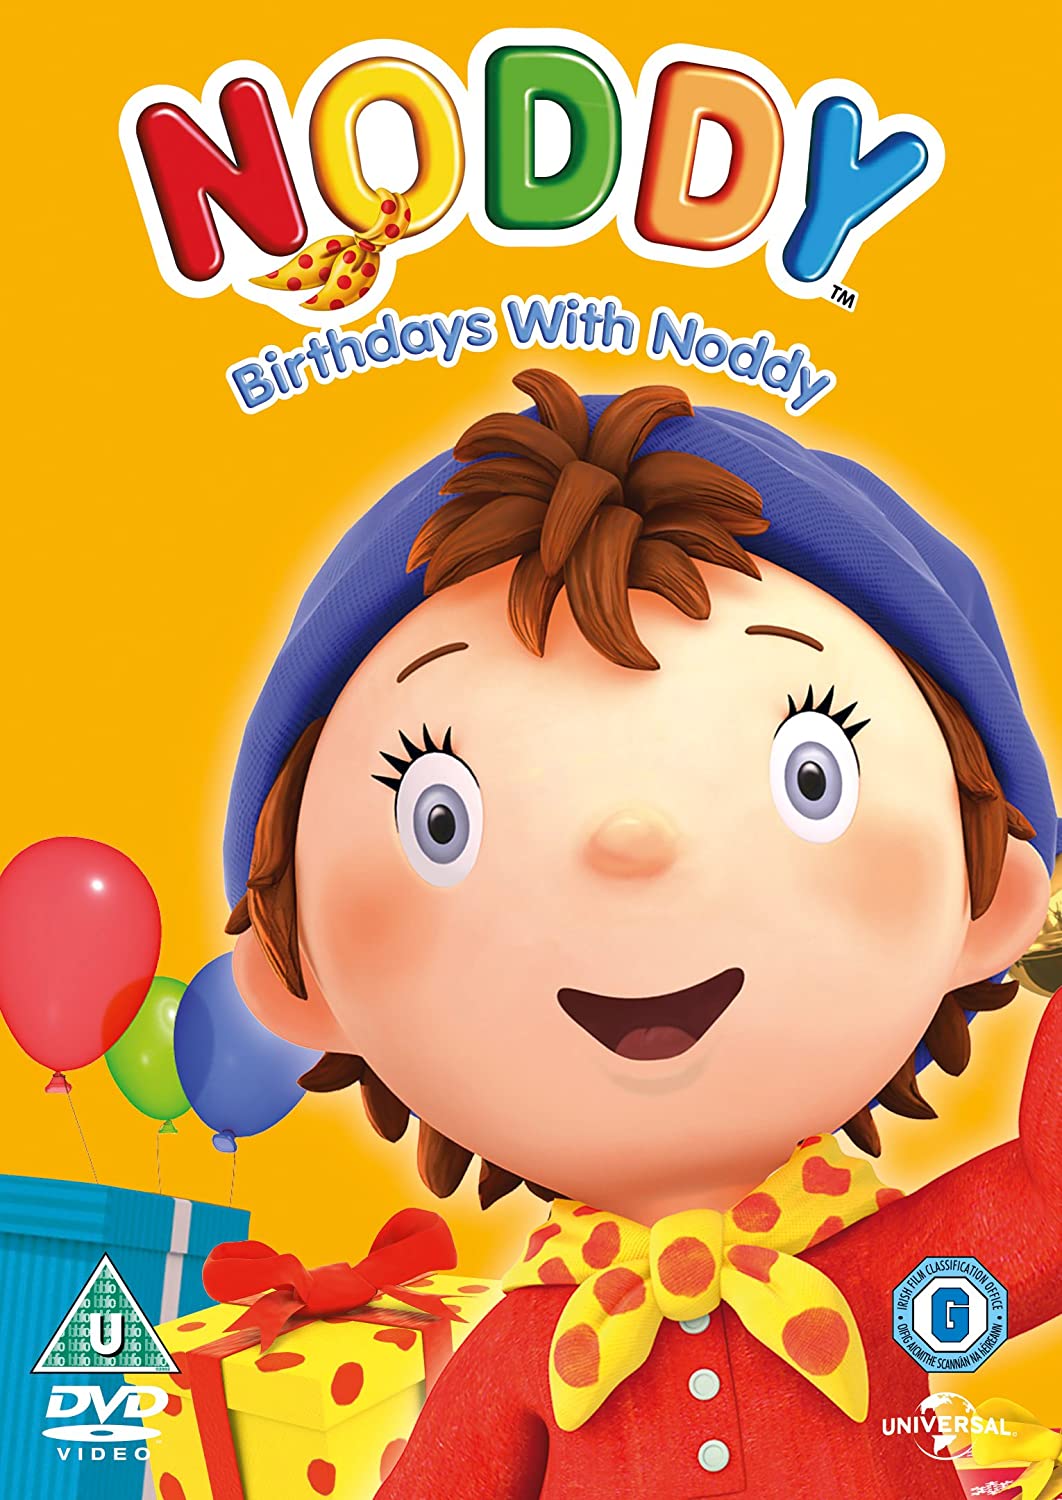 Noddy in Toyland - Birthdays With Noddy [2015] - Animation [DVD]